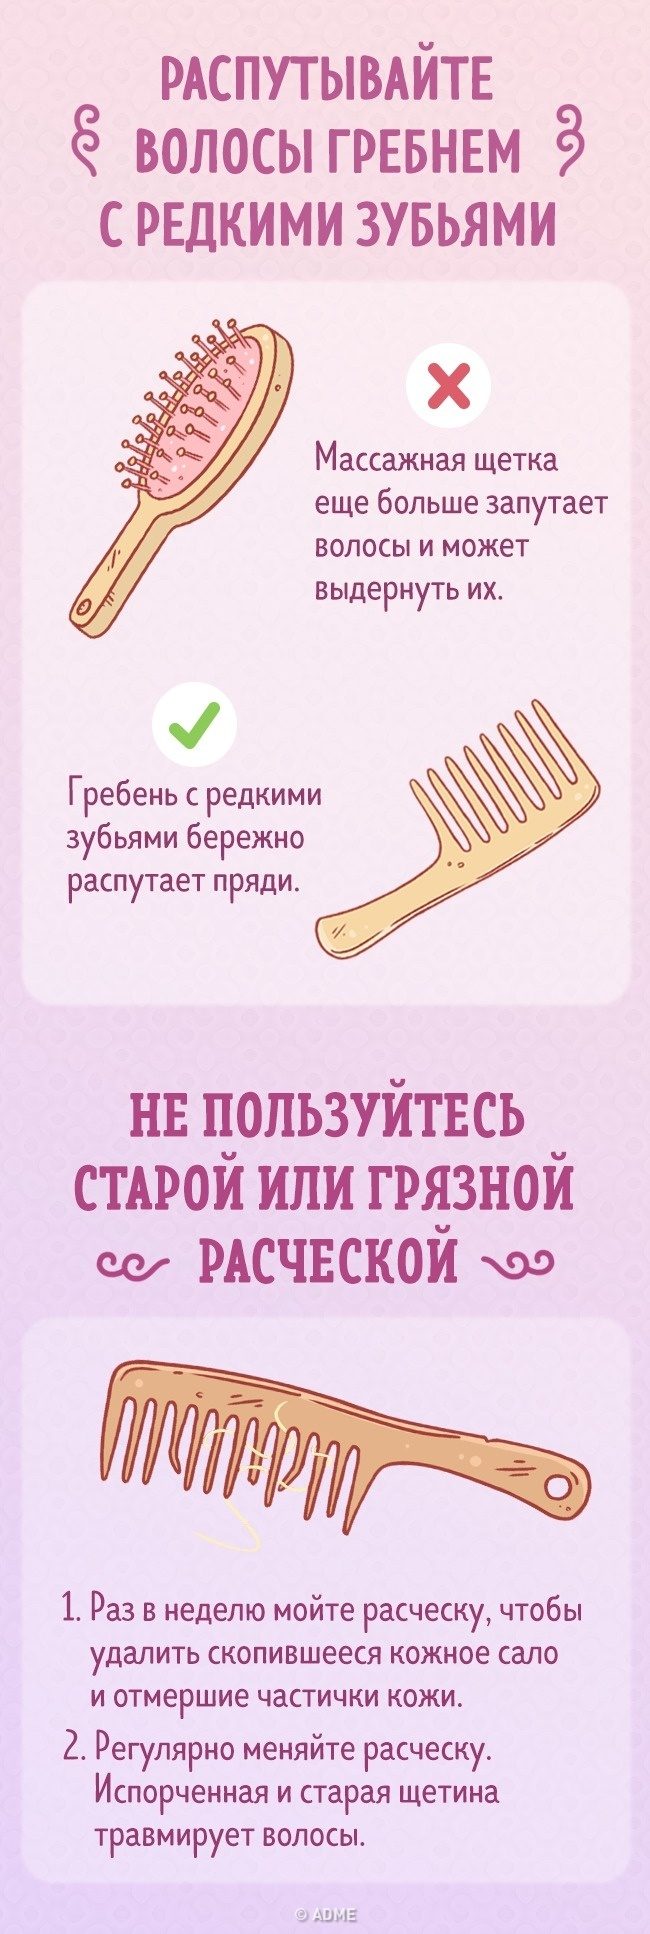 Советы, как правильно расчесывать волосы